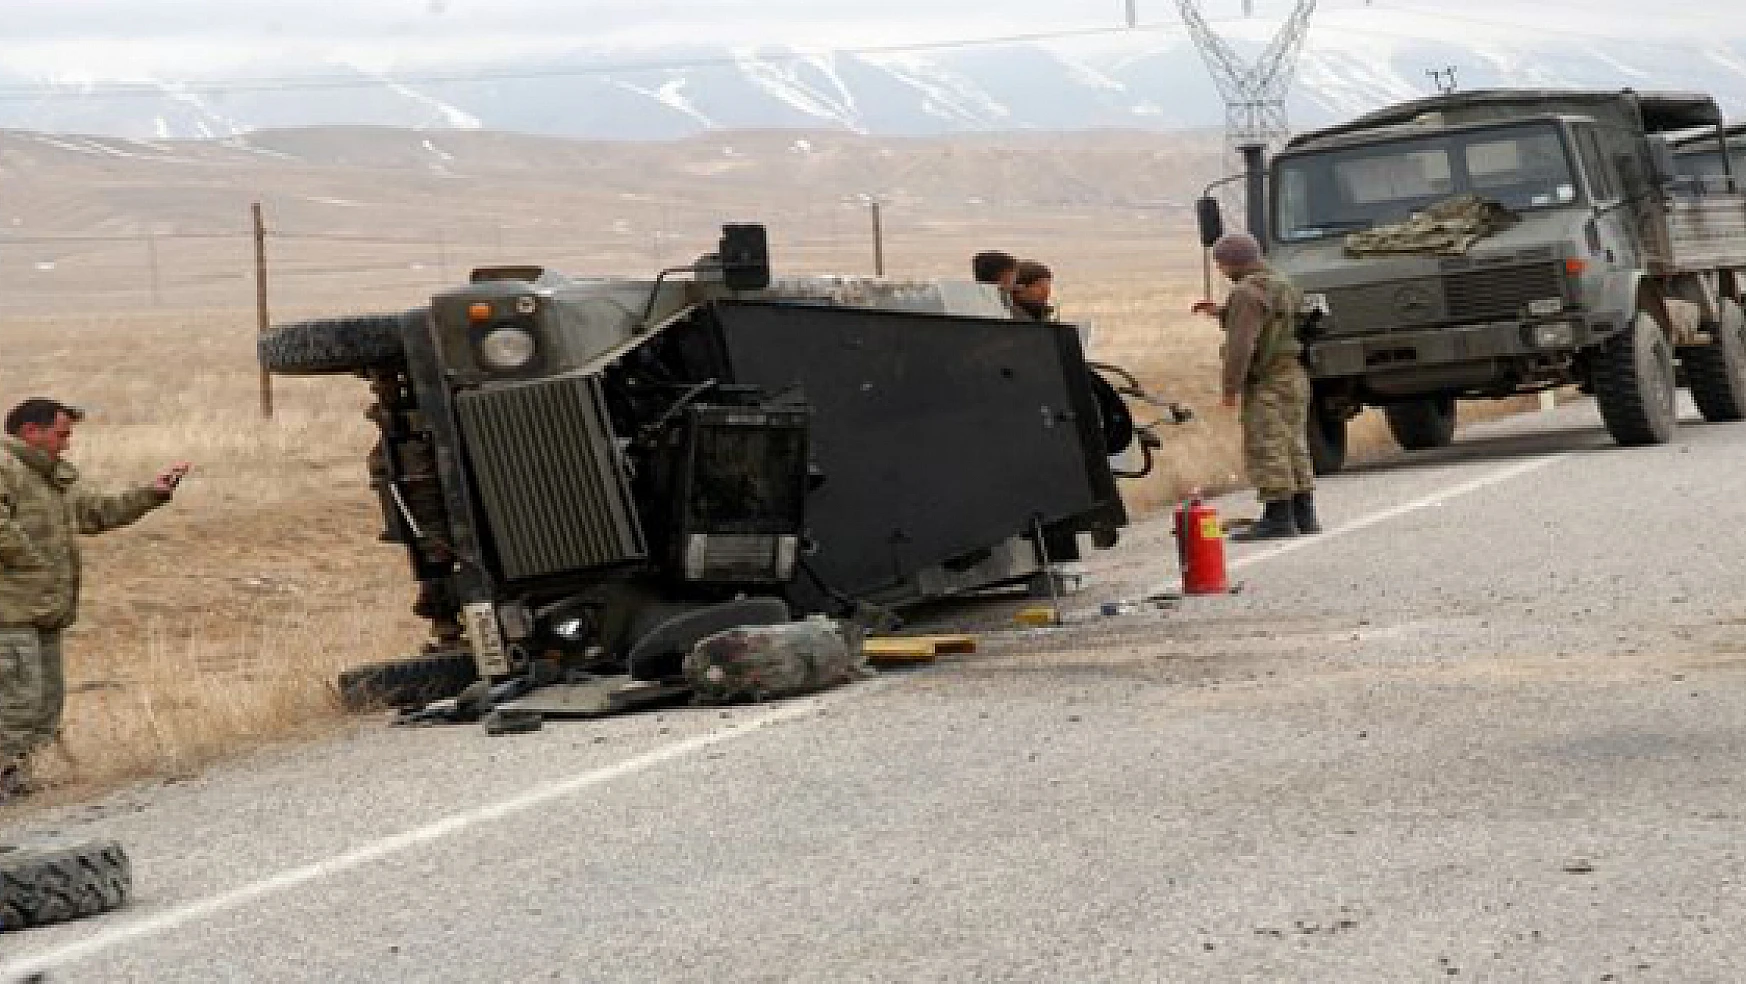  Başkale'de askeri araç devrildi: 2 yaralı